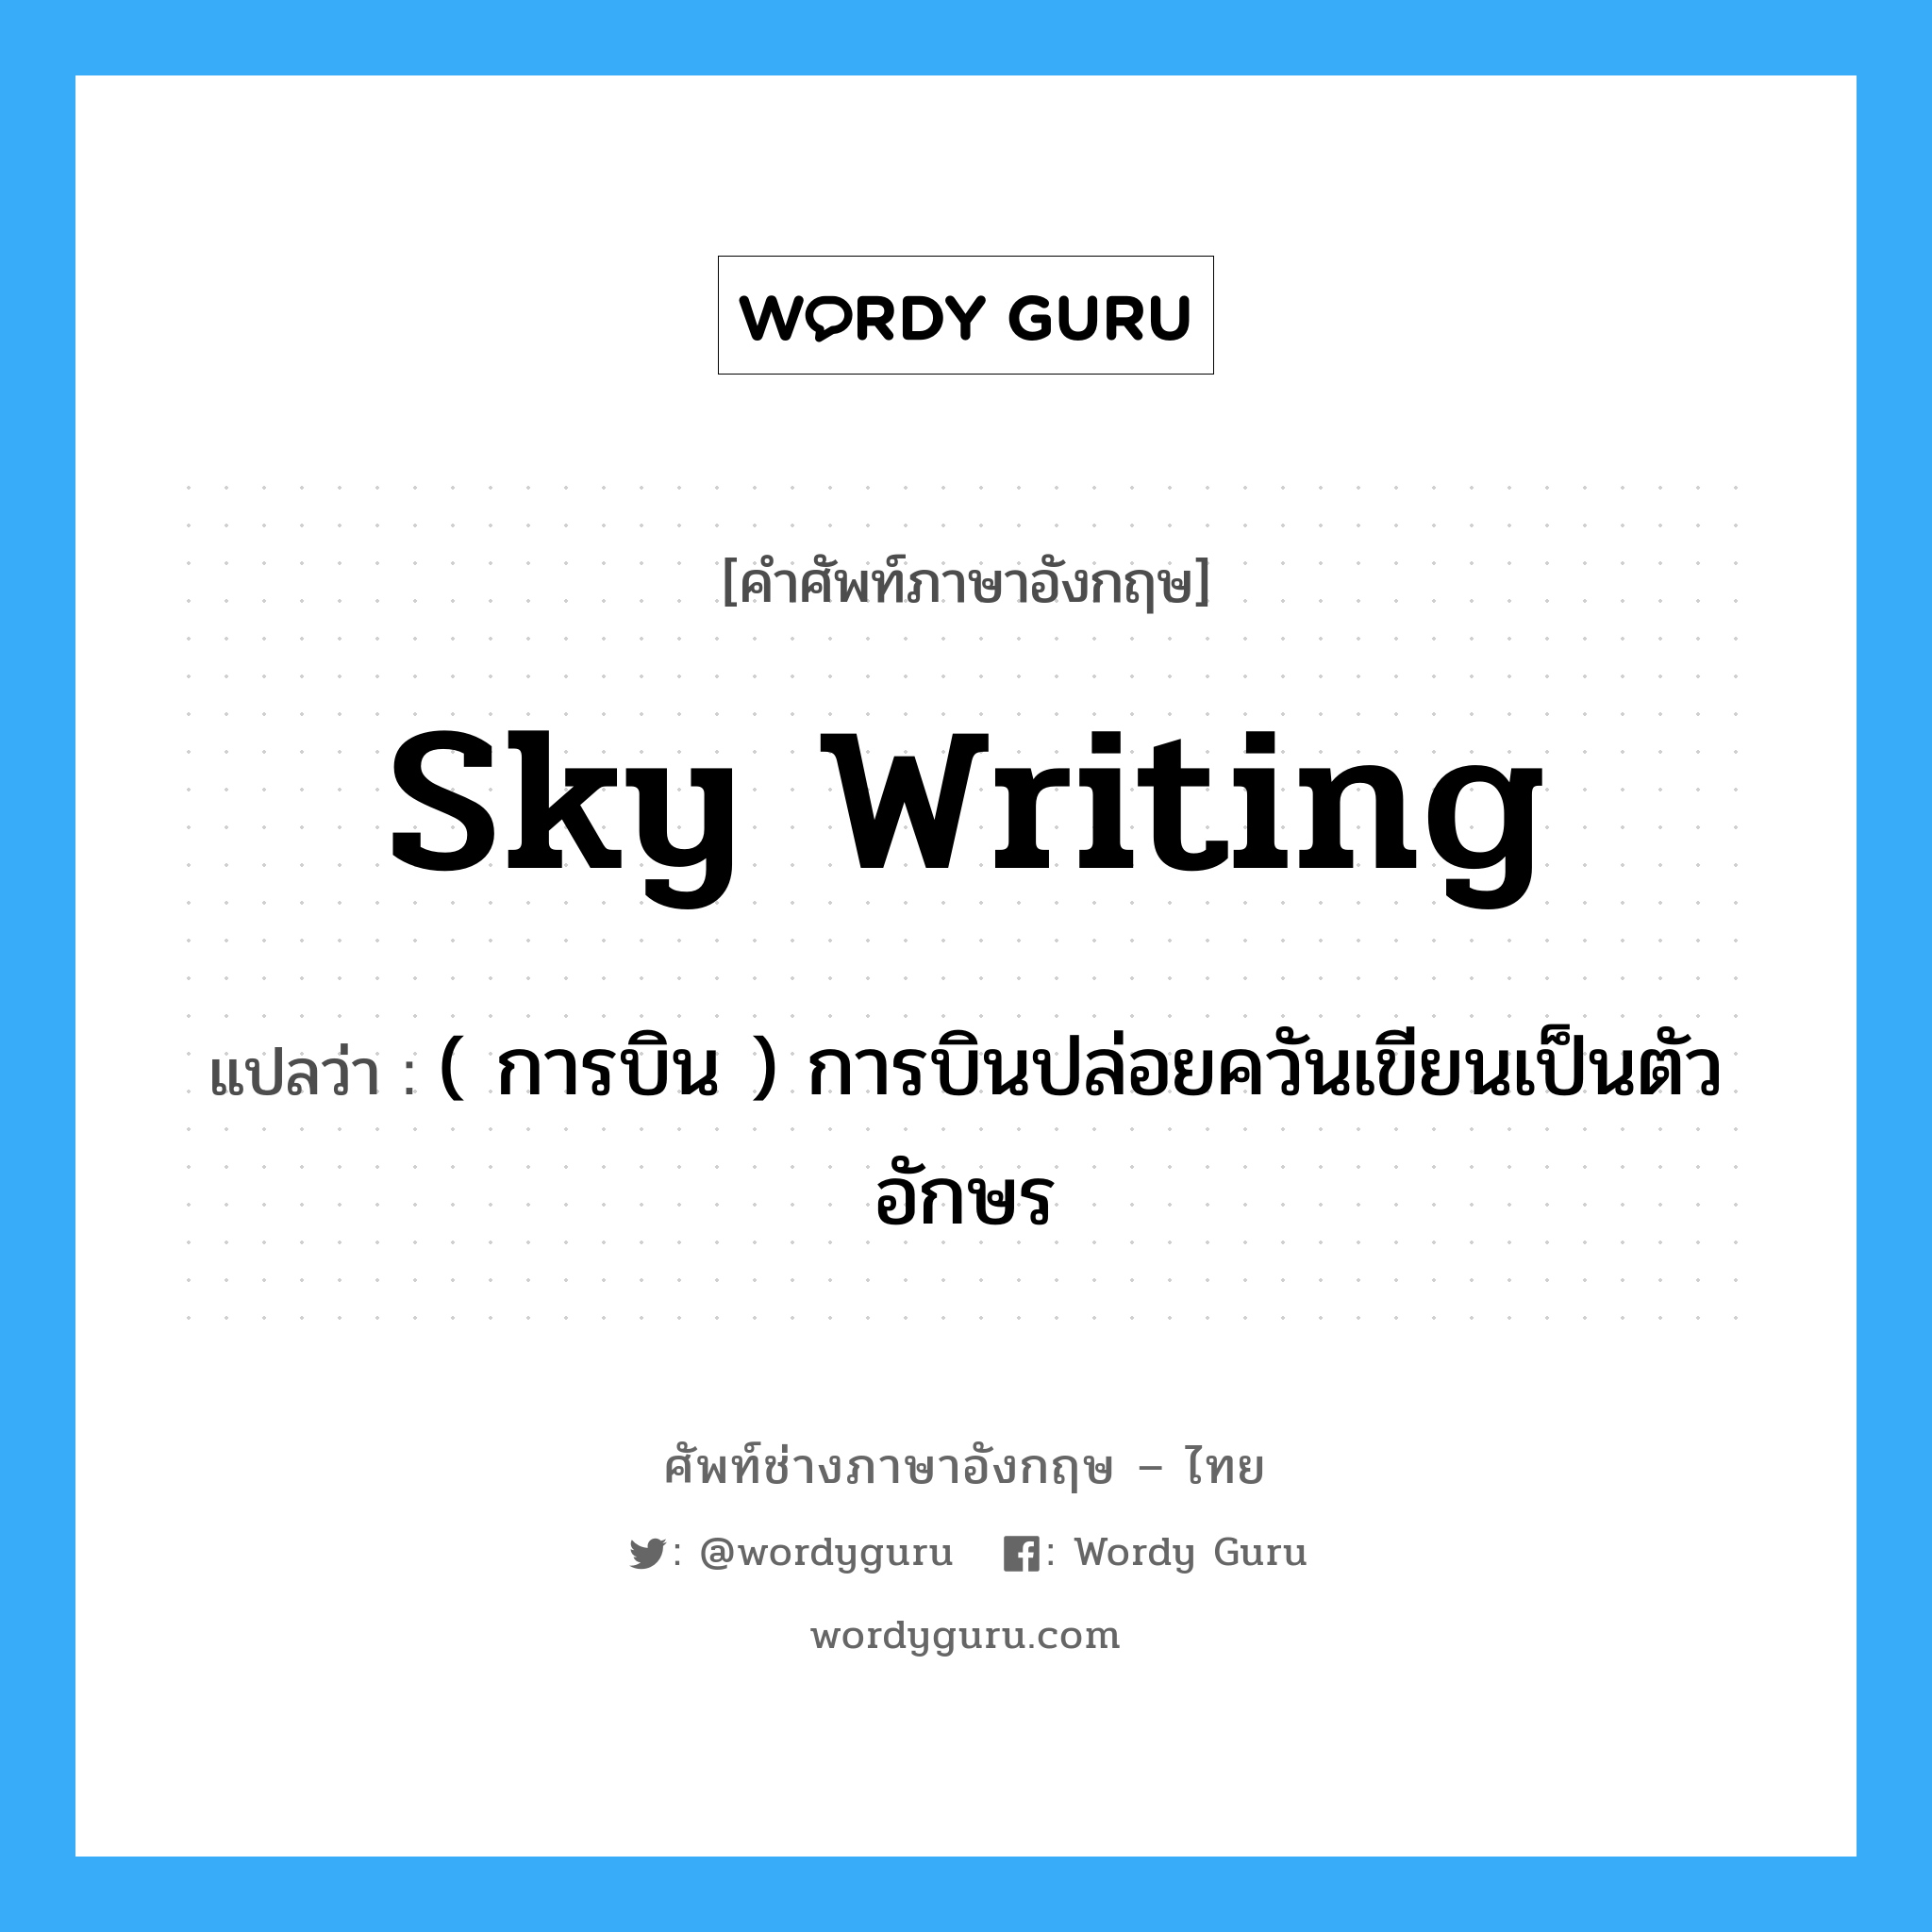 sky writing แปลว่า?, คำศัพท์ช่างภาษาอังกฤษ - ไทย sky writing คำศัพท์ภาษาอังกฤษ sky writing แปลว่า ( การบิน ) การบินปล่อยควันเขียนเป็นตัวอักษร